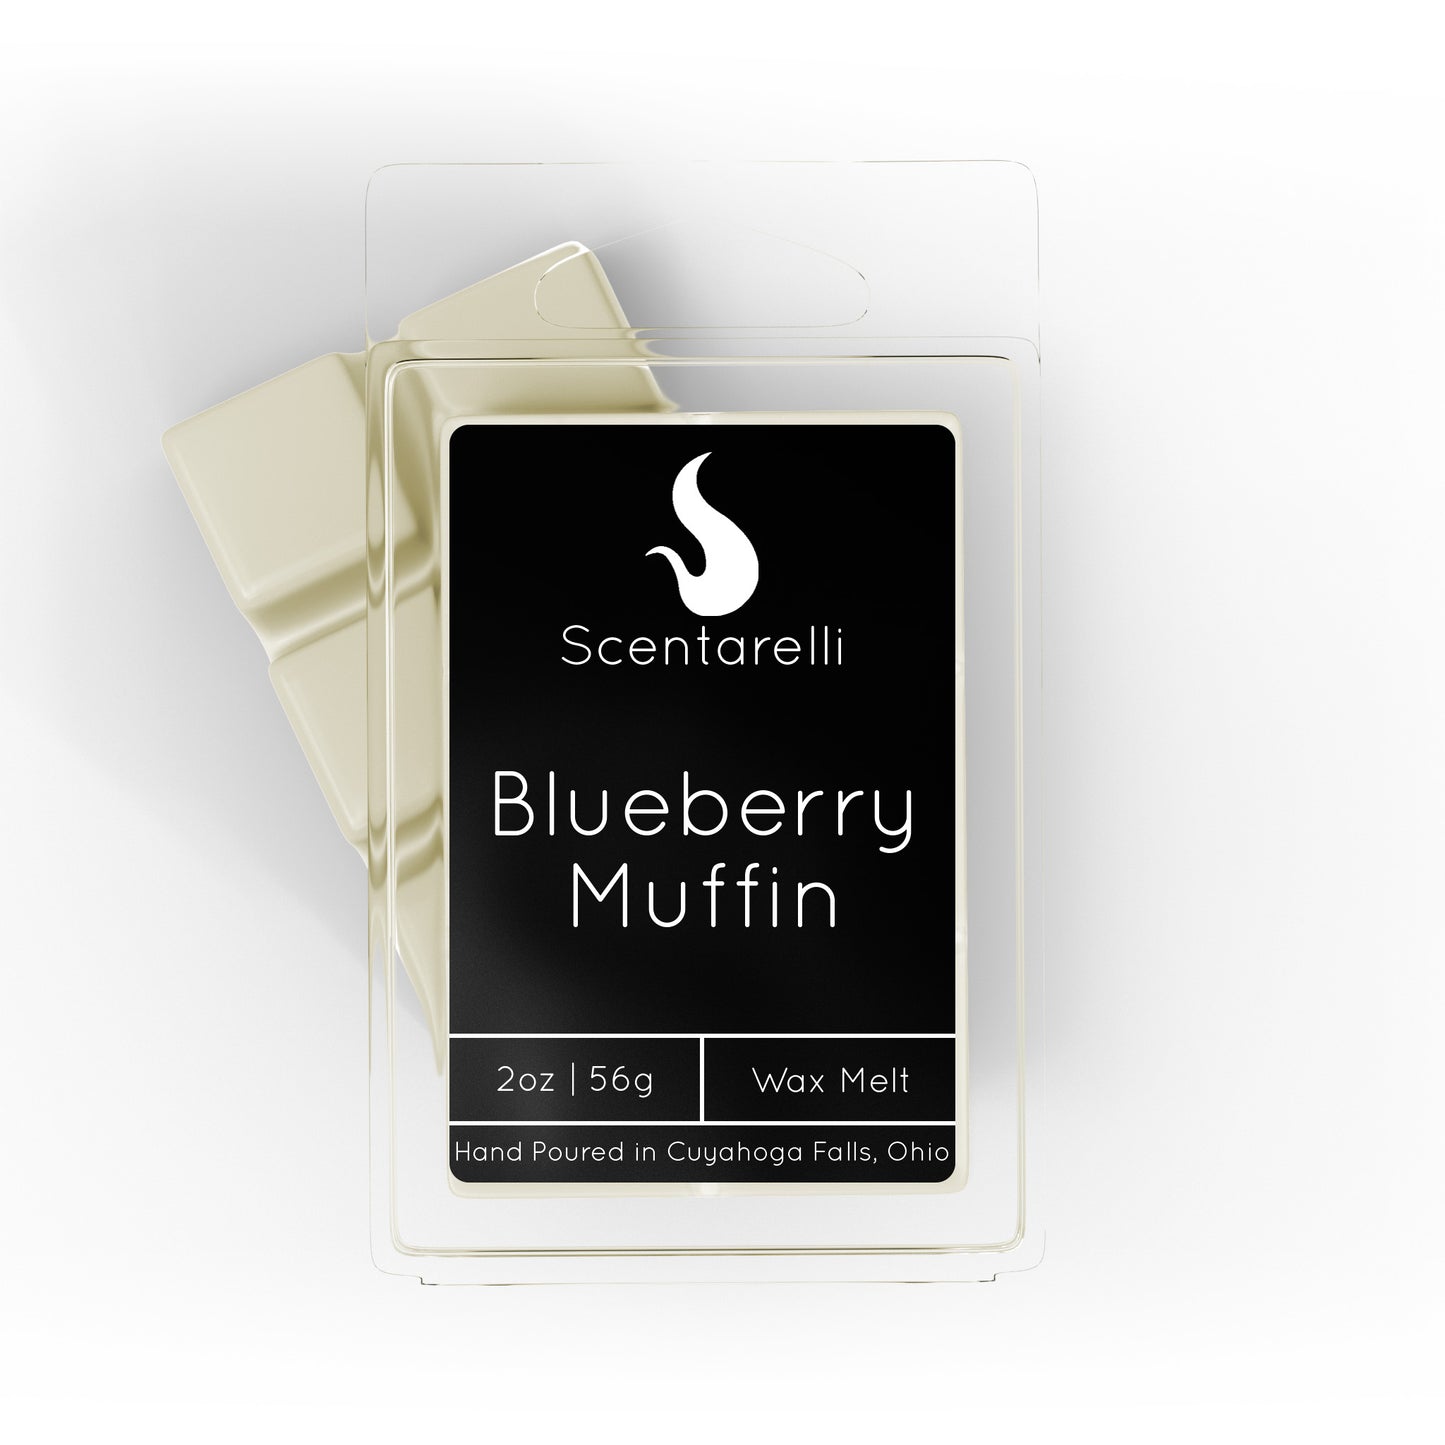 Blueberry Muffin Wax Melt